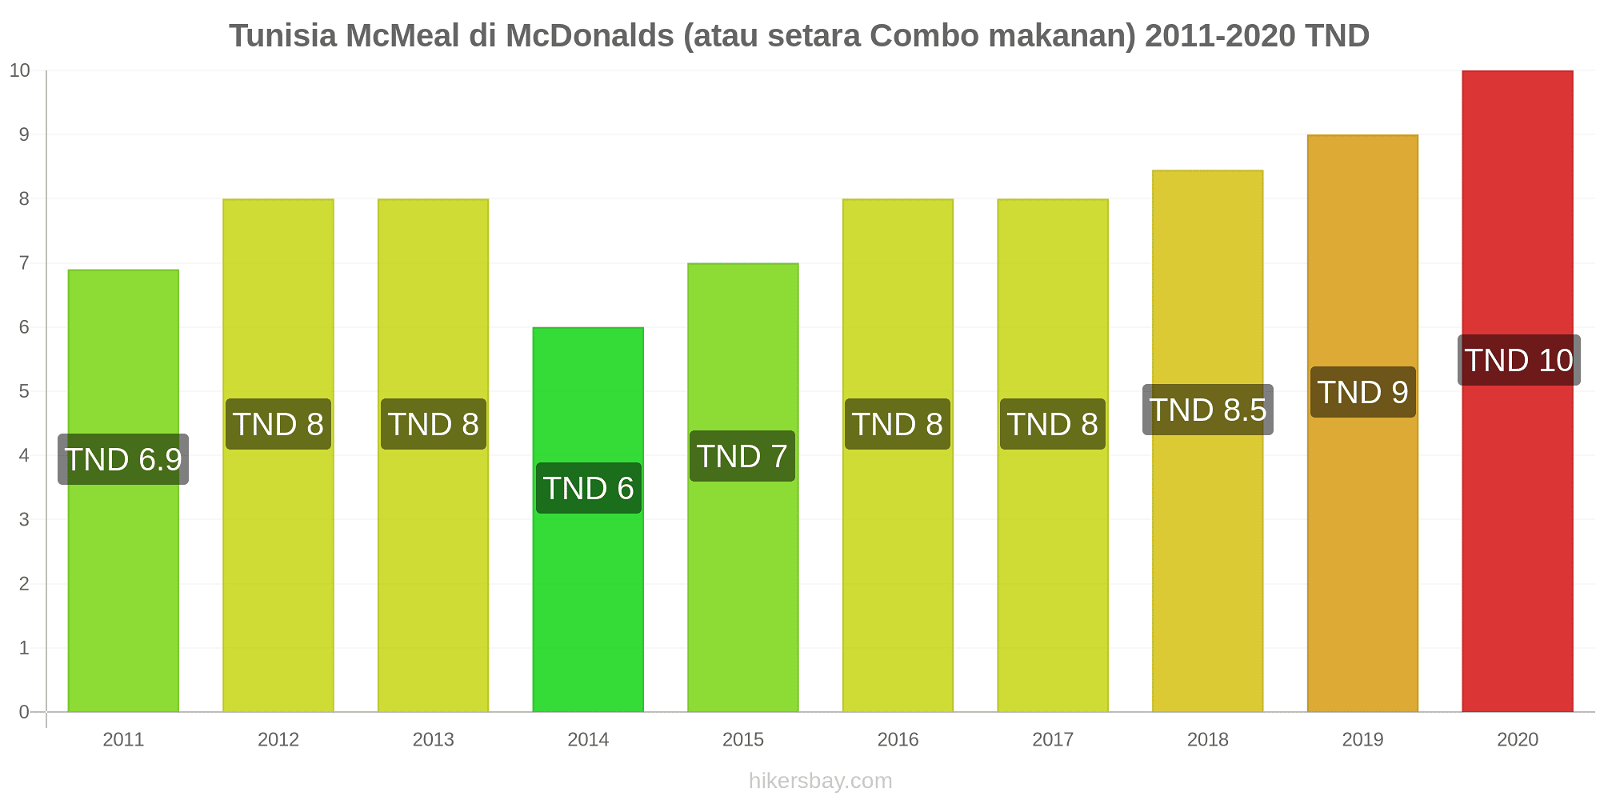 Tunisia perubahan harga McMeal di McDonalds (atau setara Combo makanan) hikersbay.com